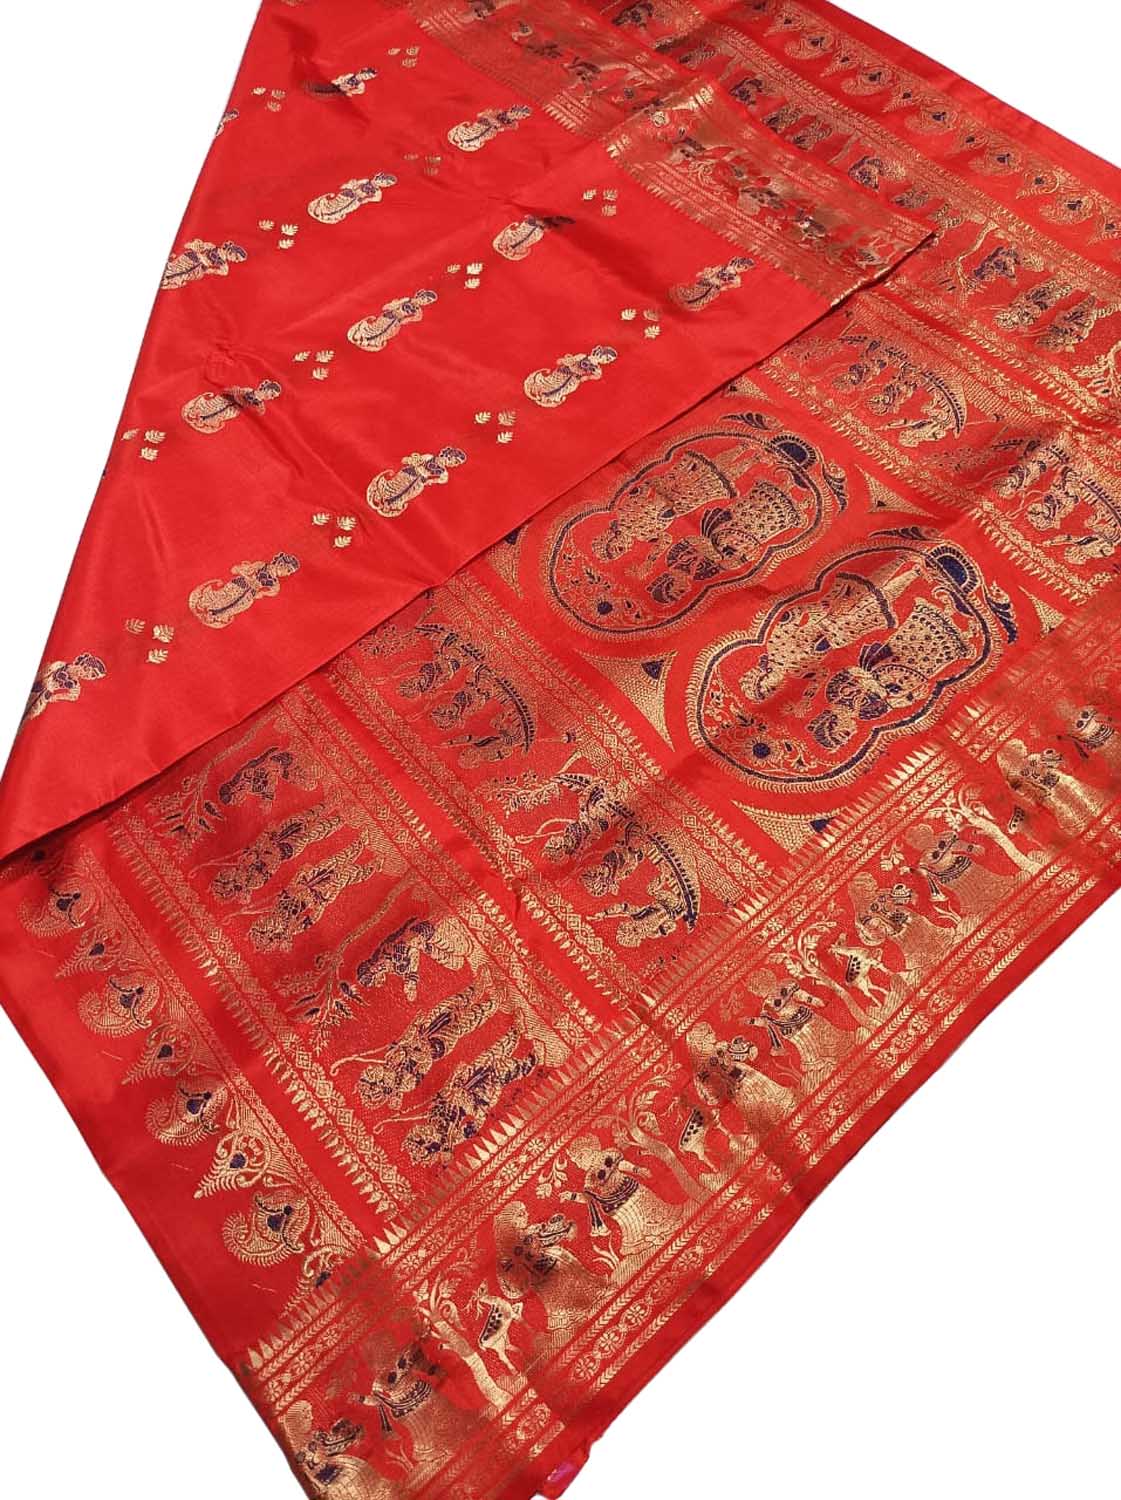 Exquisite Red Swarnachari Silk Meenakari Saree - Luxurion World